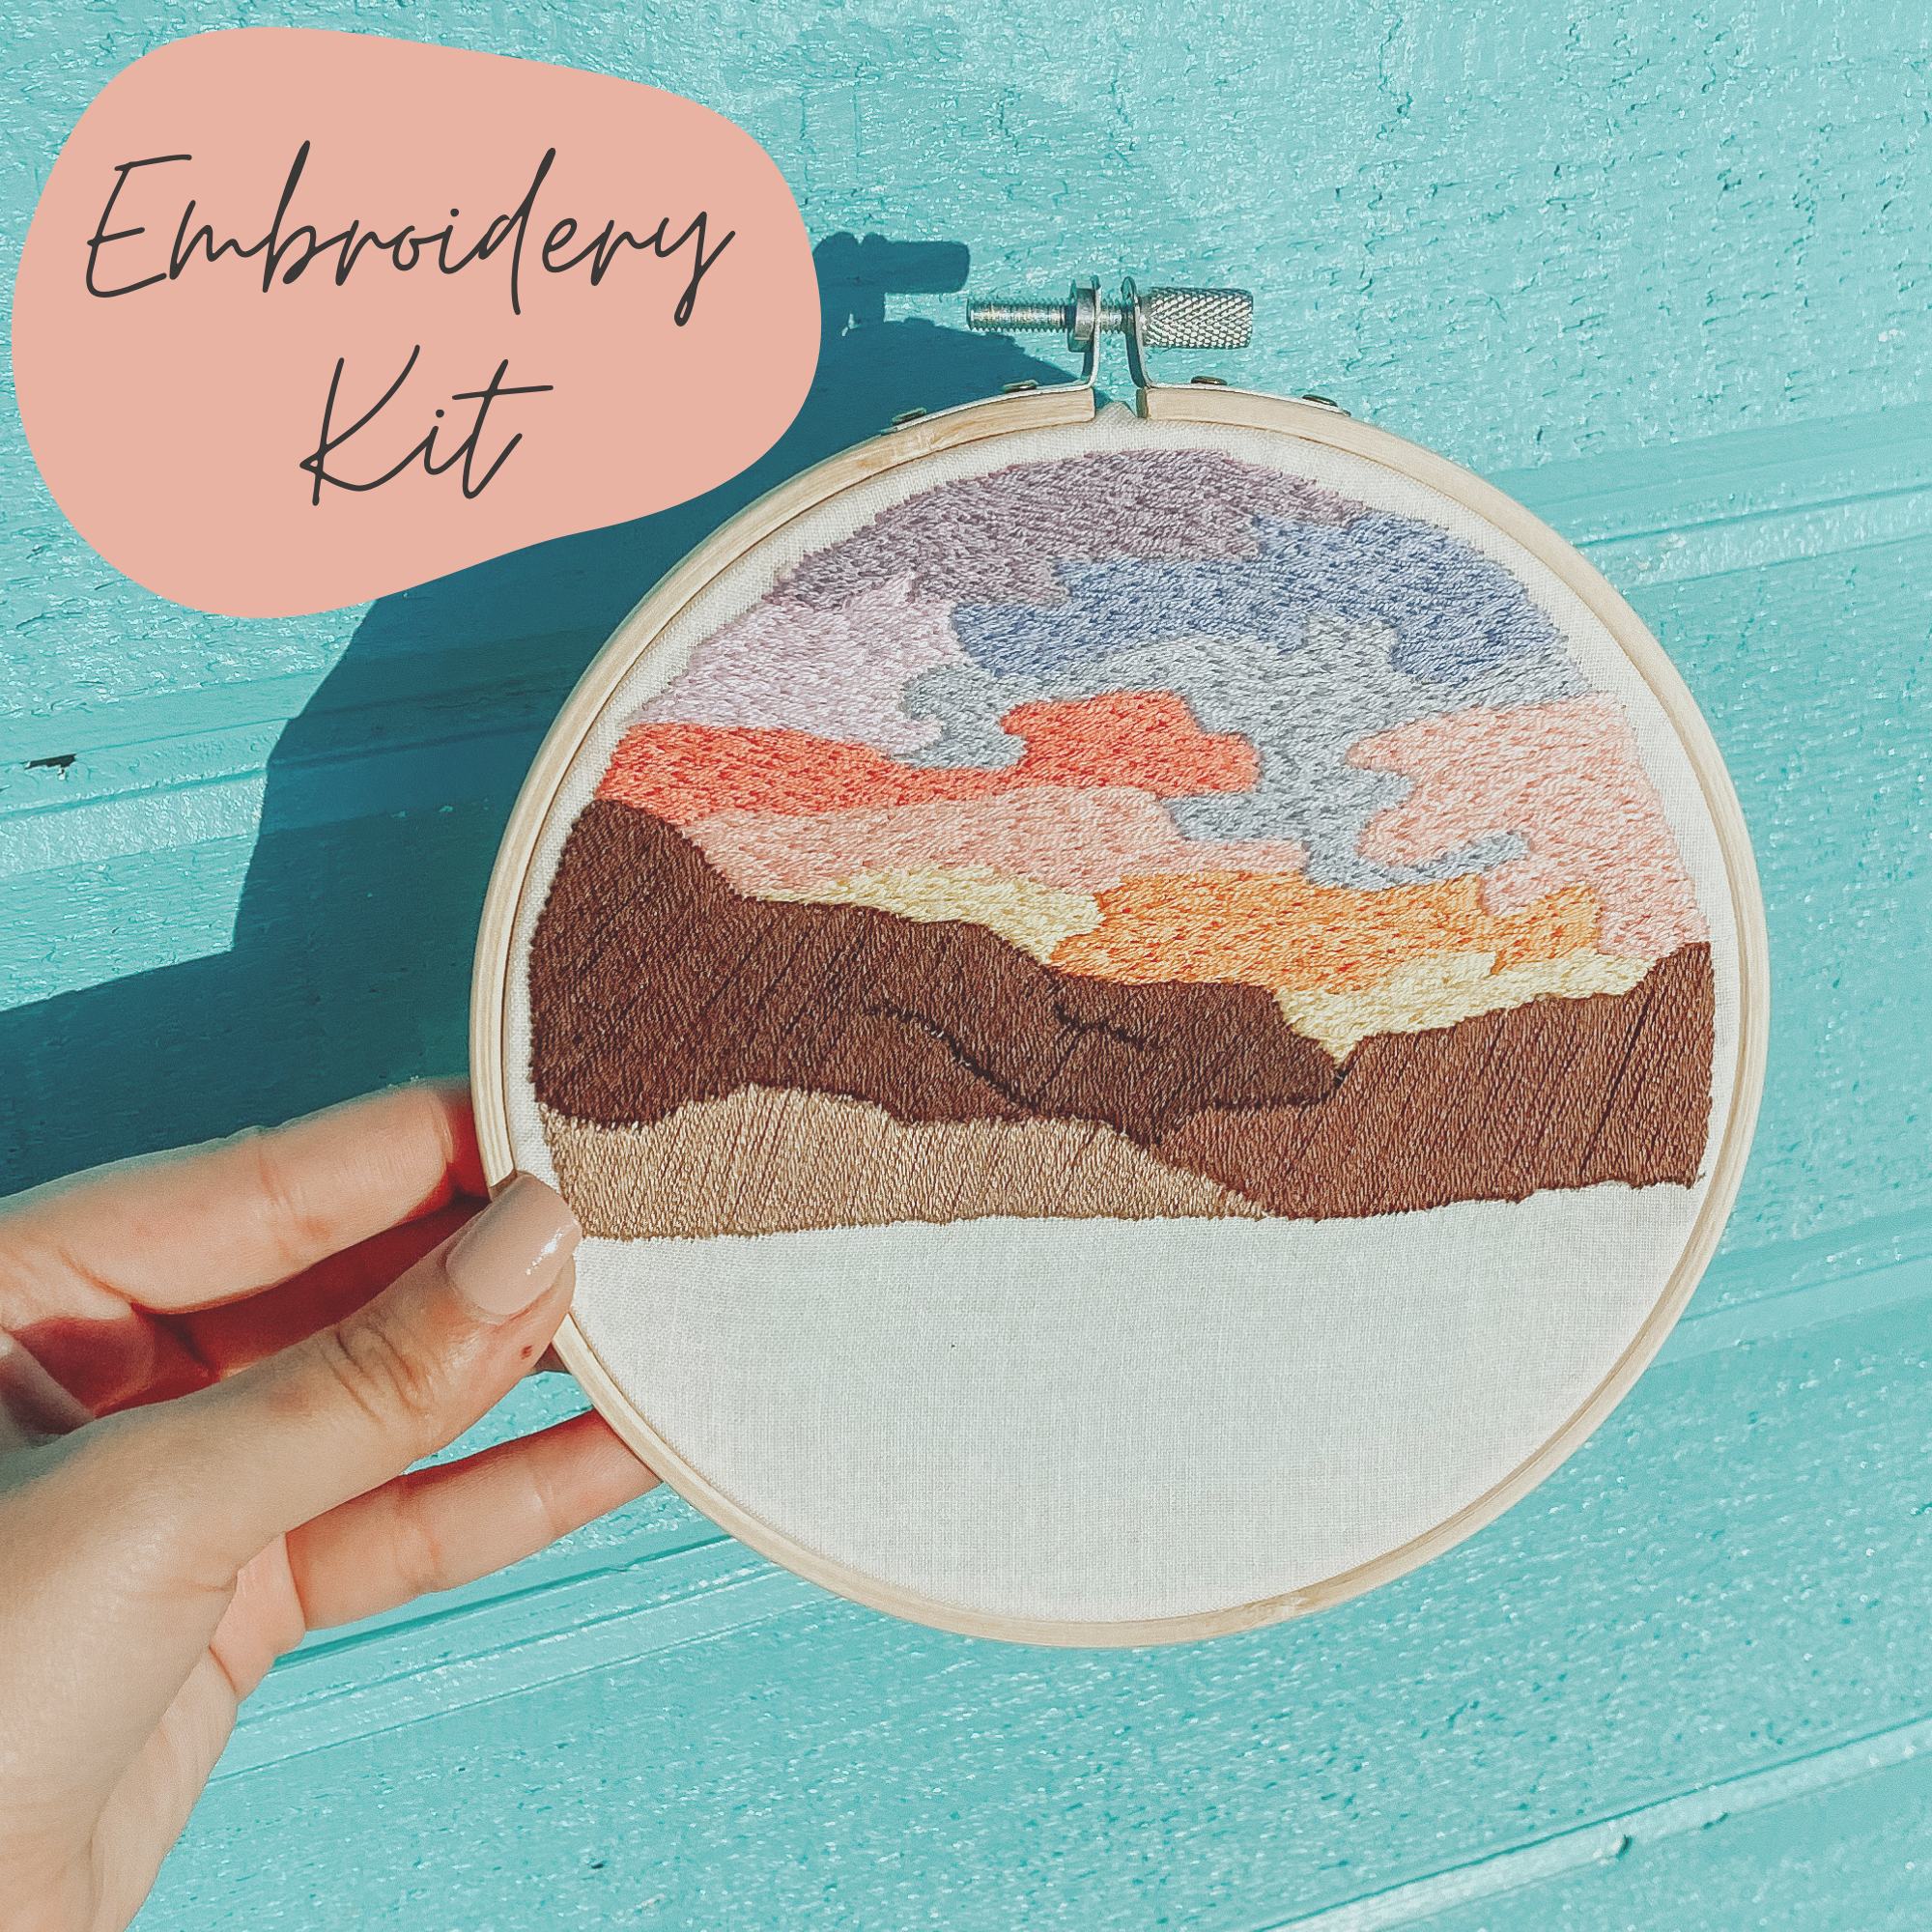 Desert Sunset Beginner Embroidery DIY Kit by Sunday Mornings Shop